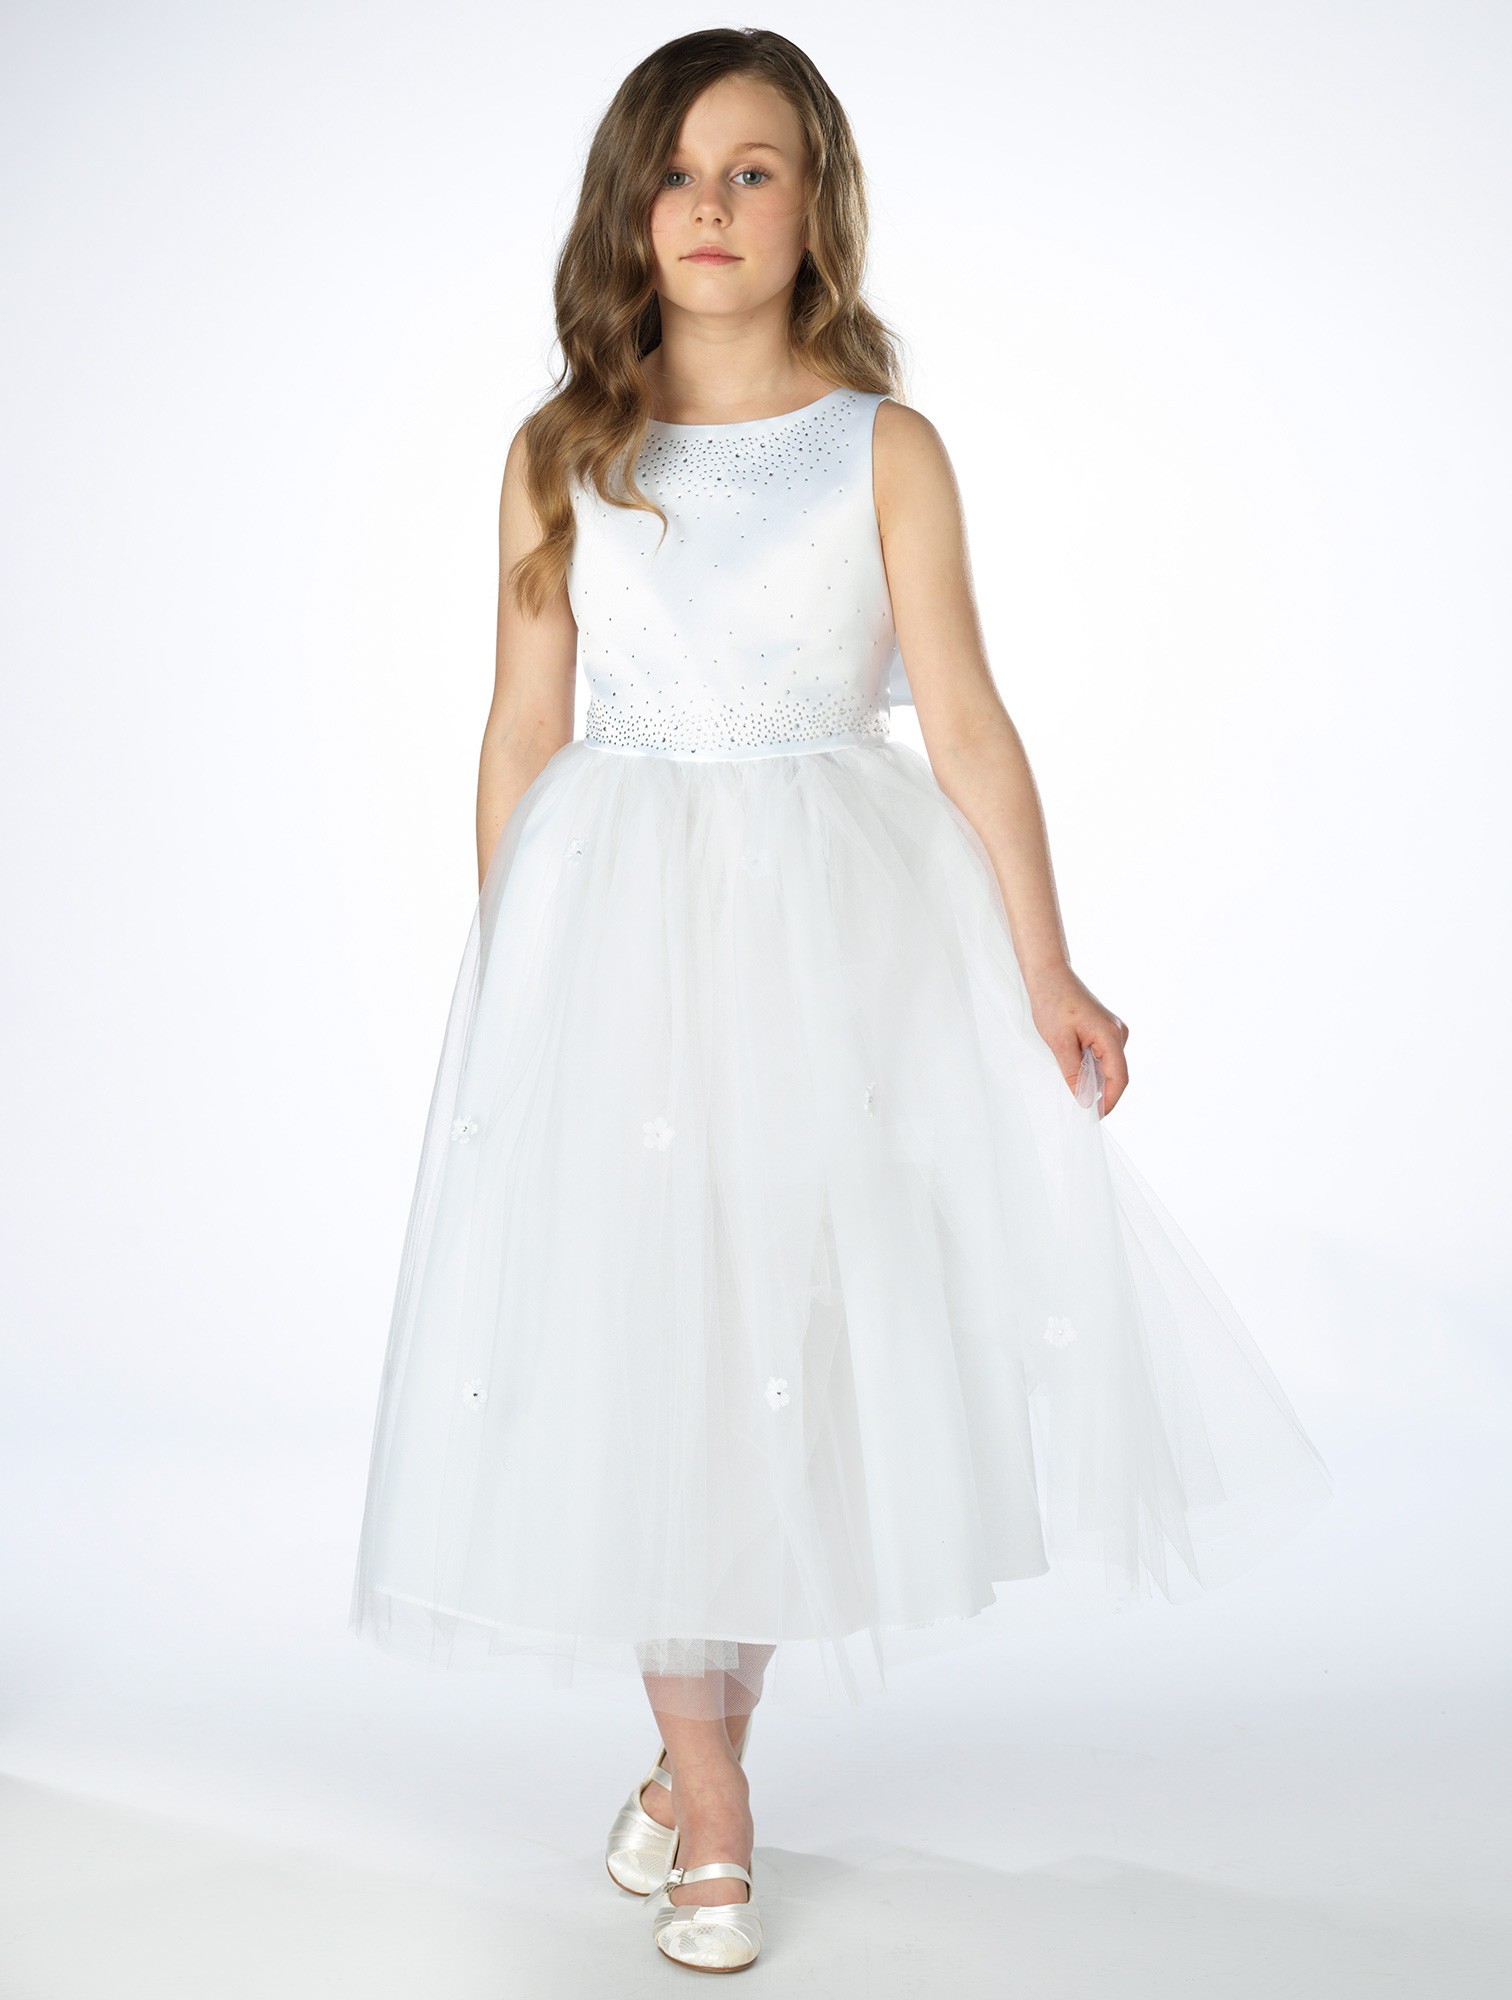 Dívčí společenské bílé šaty Tamara 